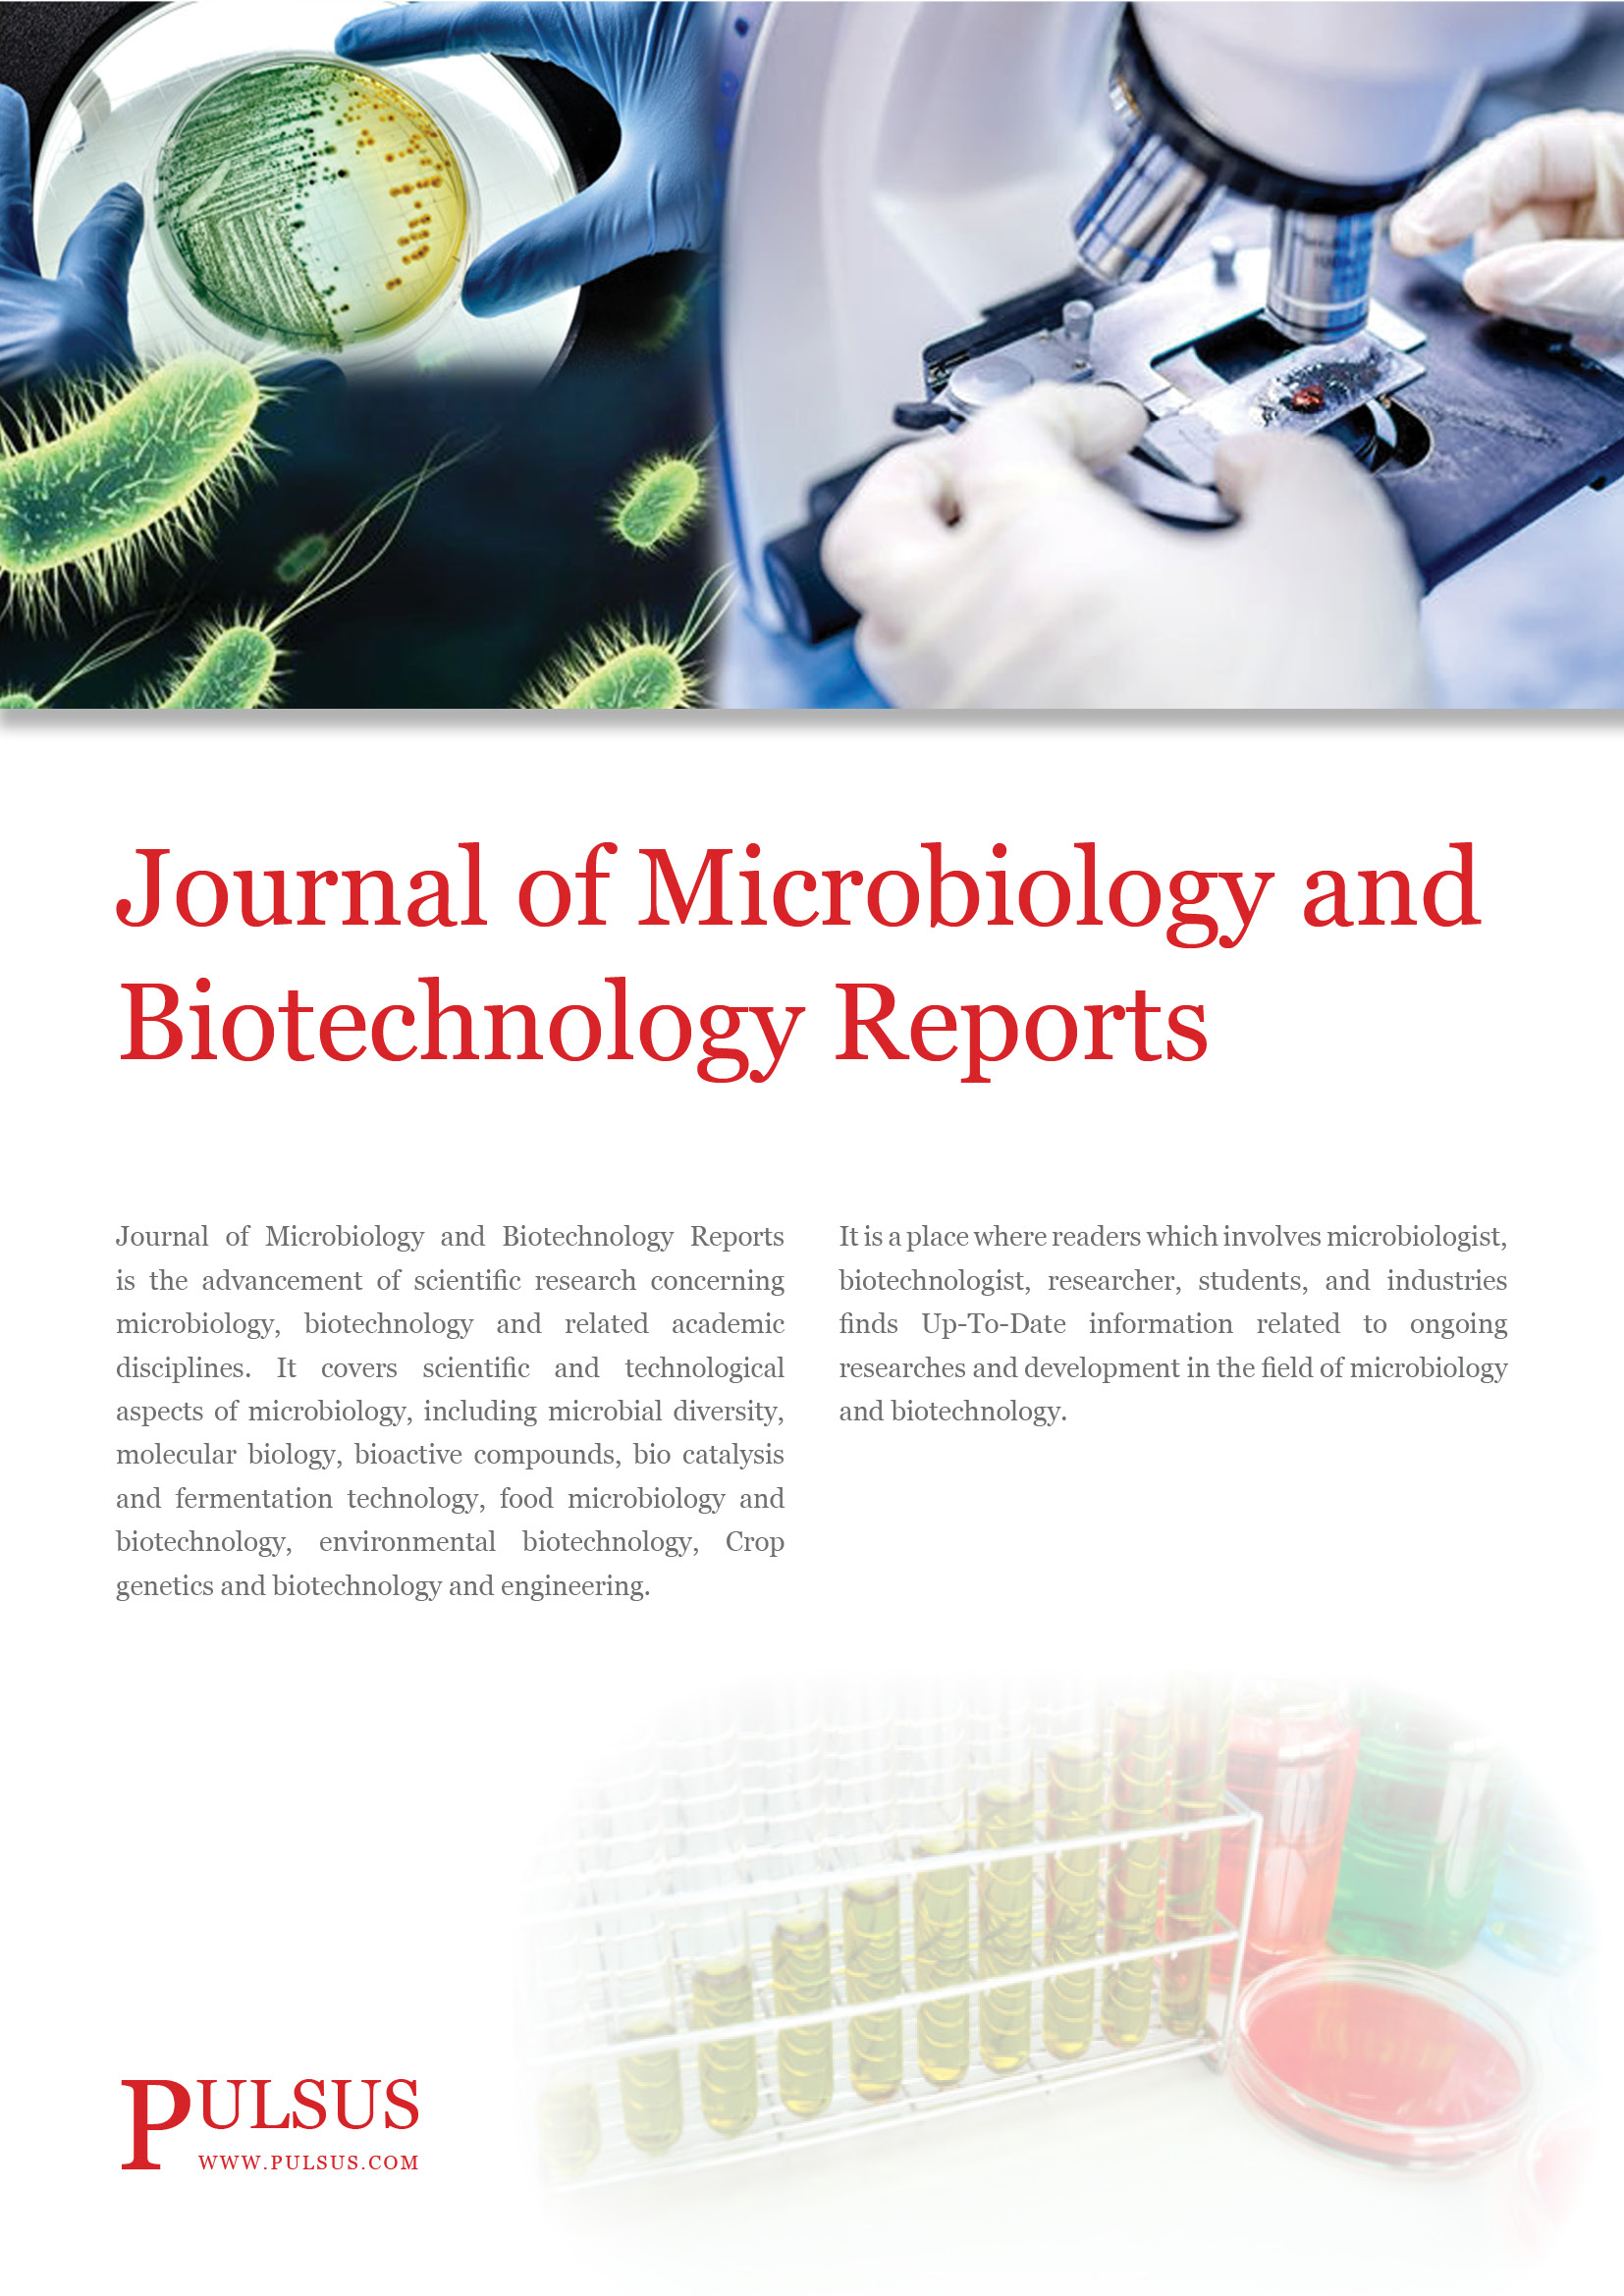 微生物学和生物技术报告杂志